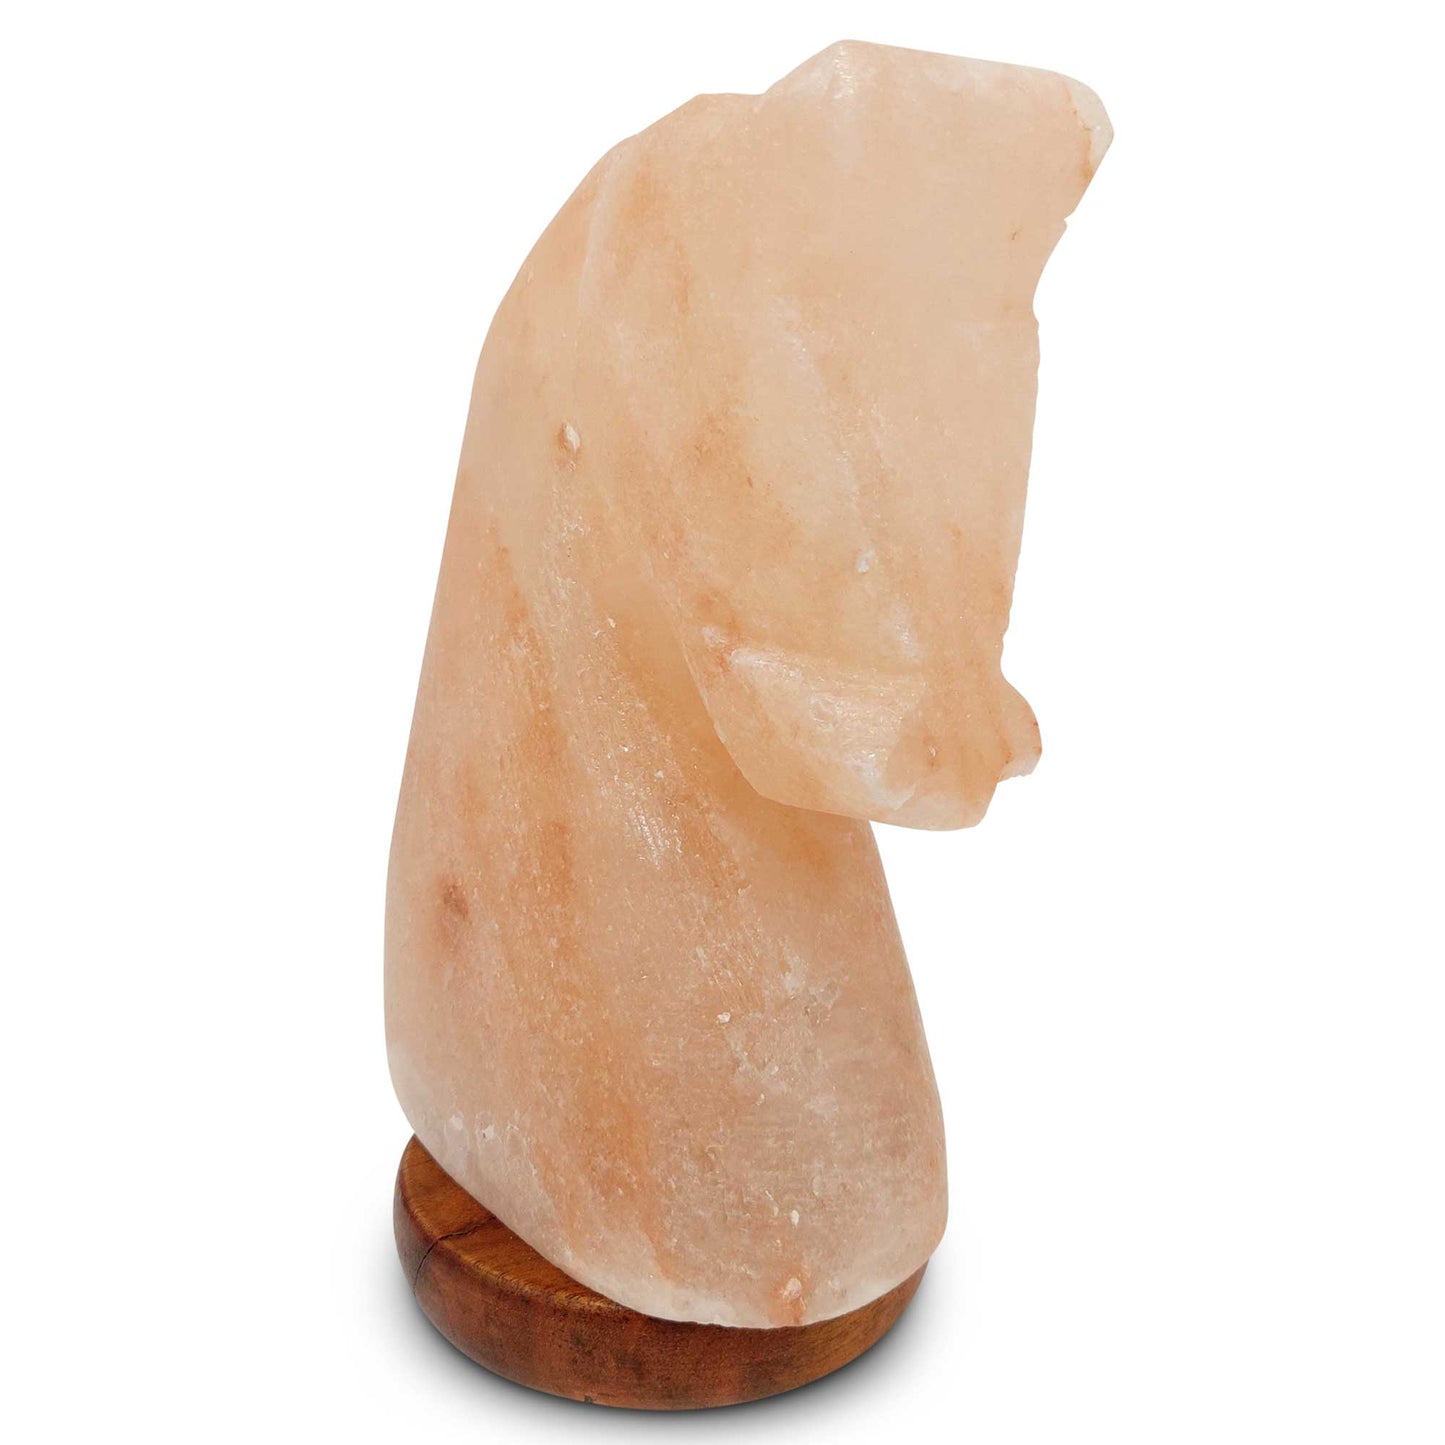 Himalayan Pink Salt Lamp + 12W 12V Switch - Carved Shape Natural Crystal Rock